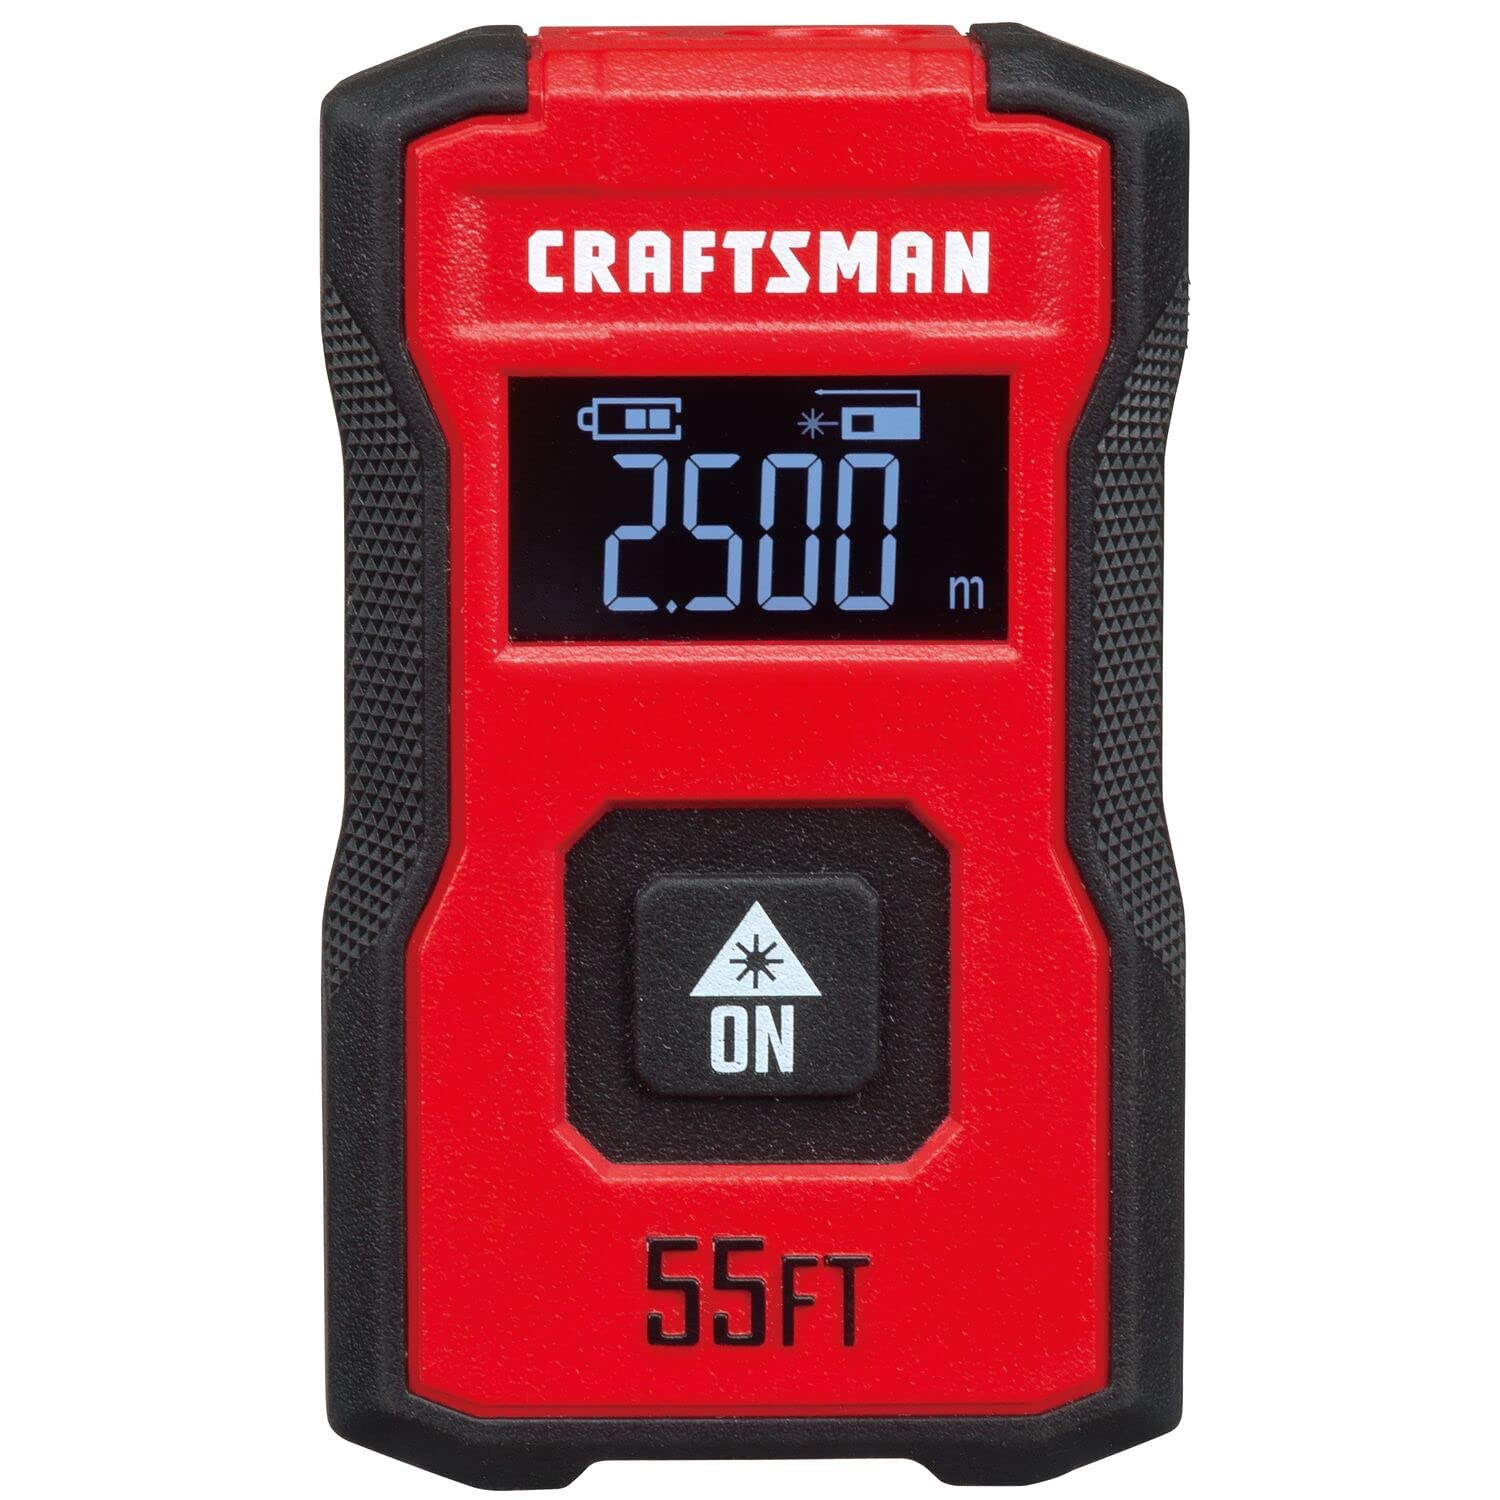 CRAFTSMAN 55 Pocket Laser Distance Measurer $20 Free Shipping w/ Prime or on $35